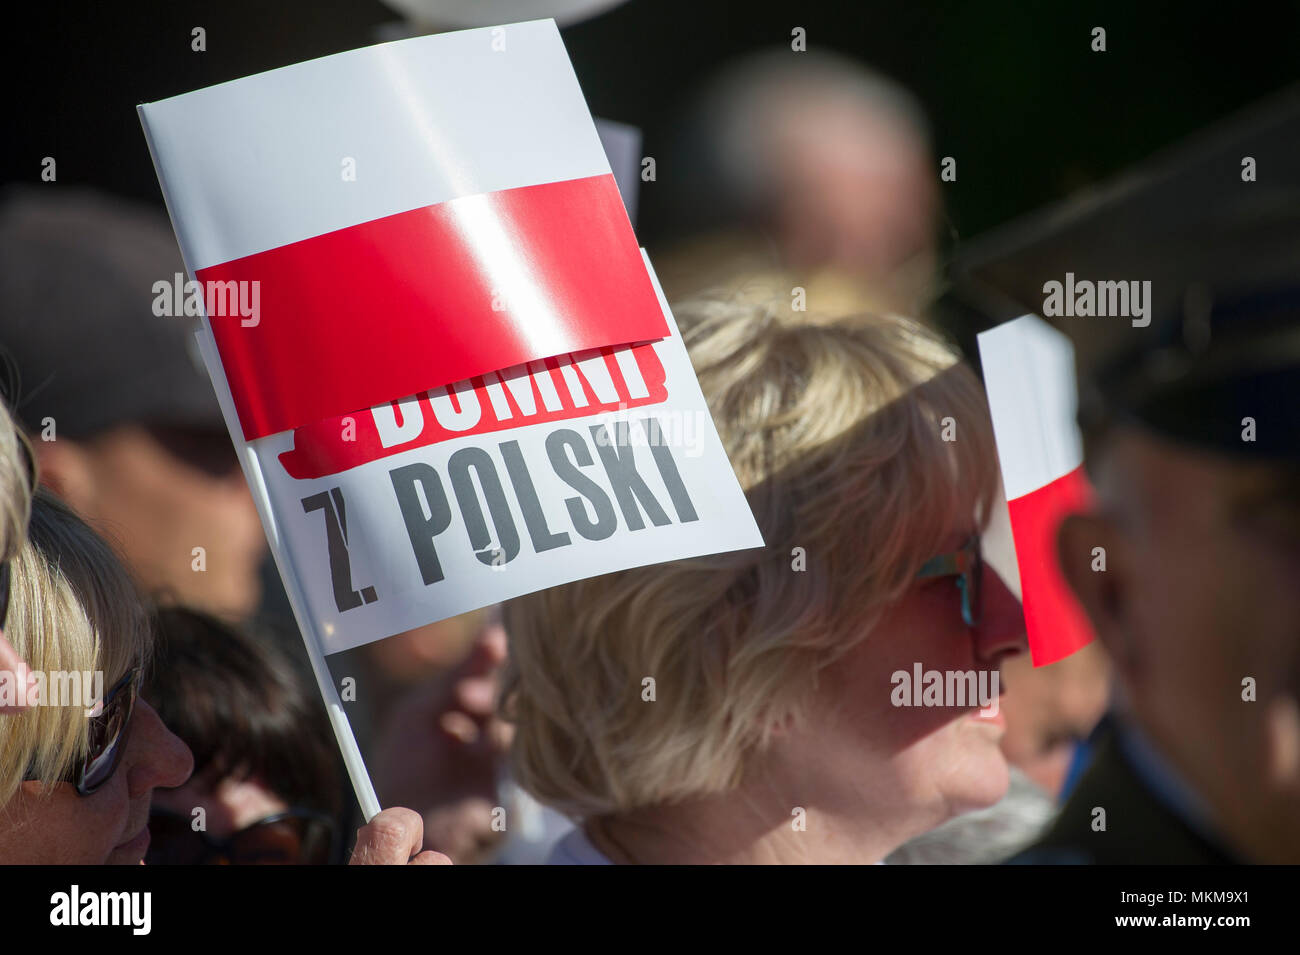 Andrzej Duda, Präsident der Republik Polen, in Sztum, Polen. 7. Mai 2018 © wojciech Strozyk/Alamy Stock Foto Stockfoto